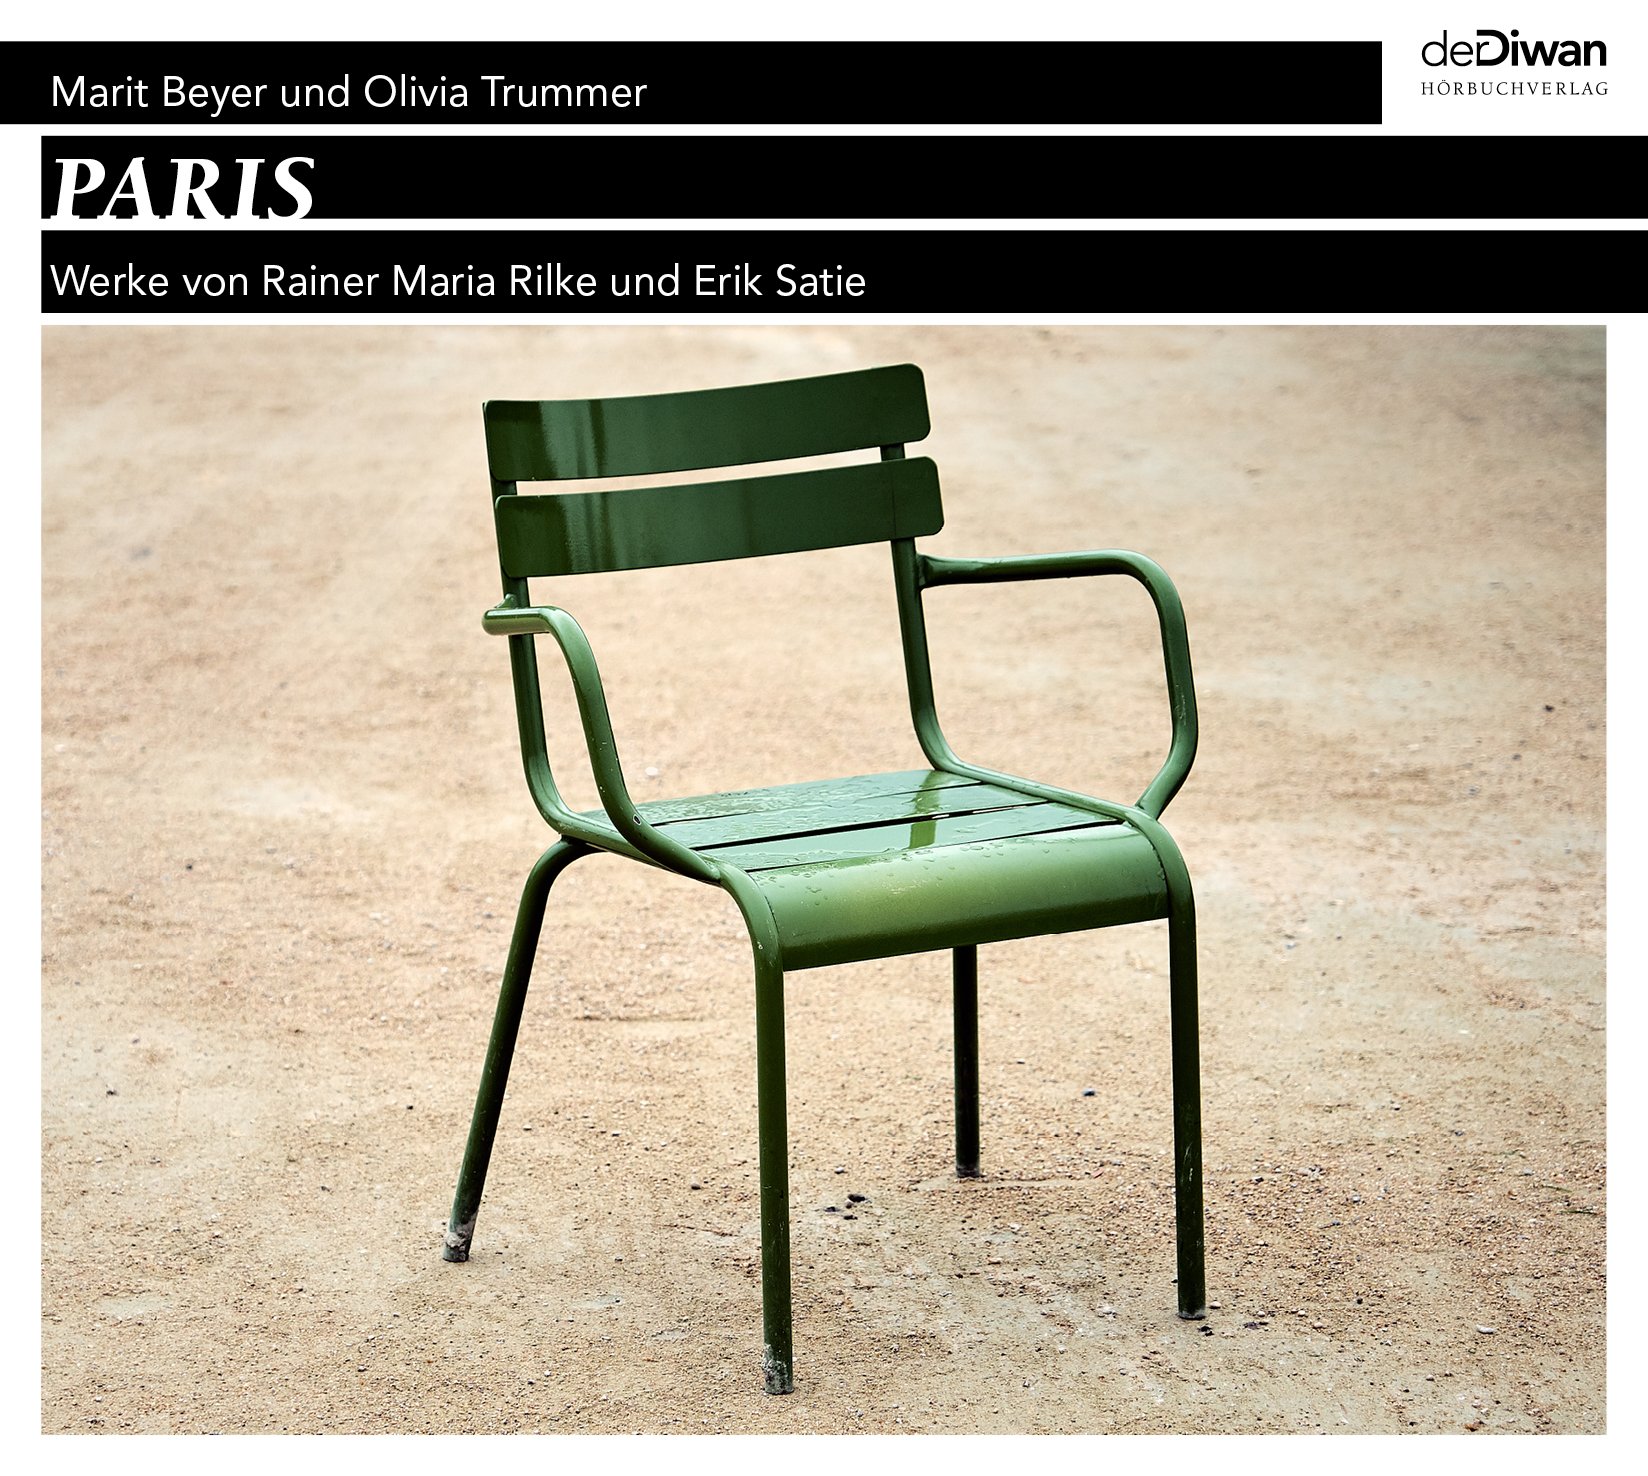 PARIS - Werke von Rainer Maria Rilke und Erik Satie (Copy)